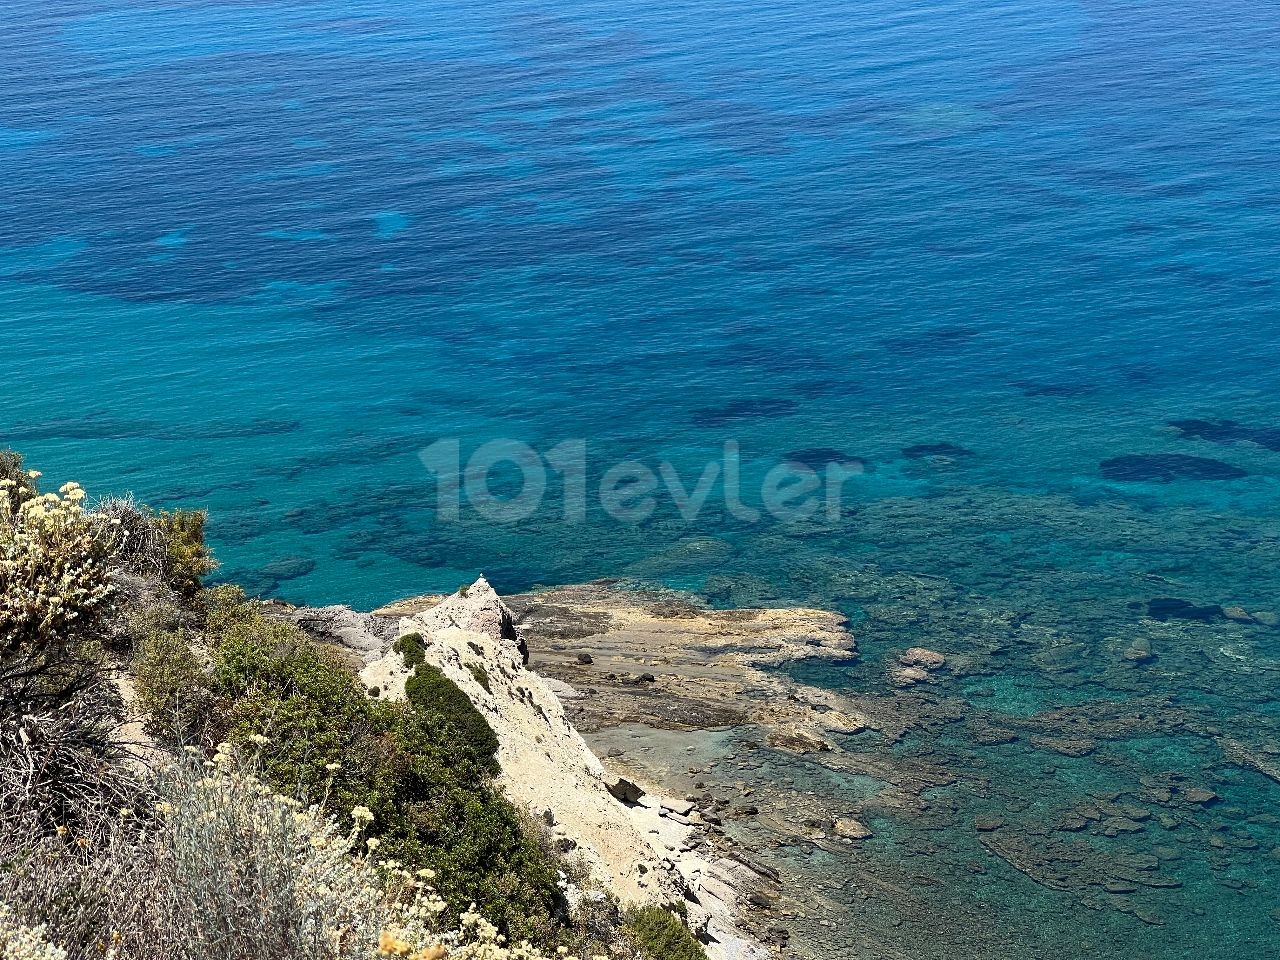 Land am Meer im Dorf Kyrenia Felsen. Es gibt einen Unterschied zwischen Meer und Land. Ein wunderschönes Land mit Blick auf eine wunderschöne Bucht. 05338403555 ** 